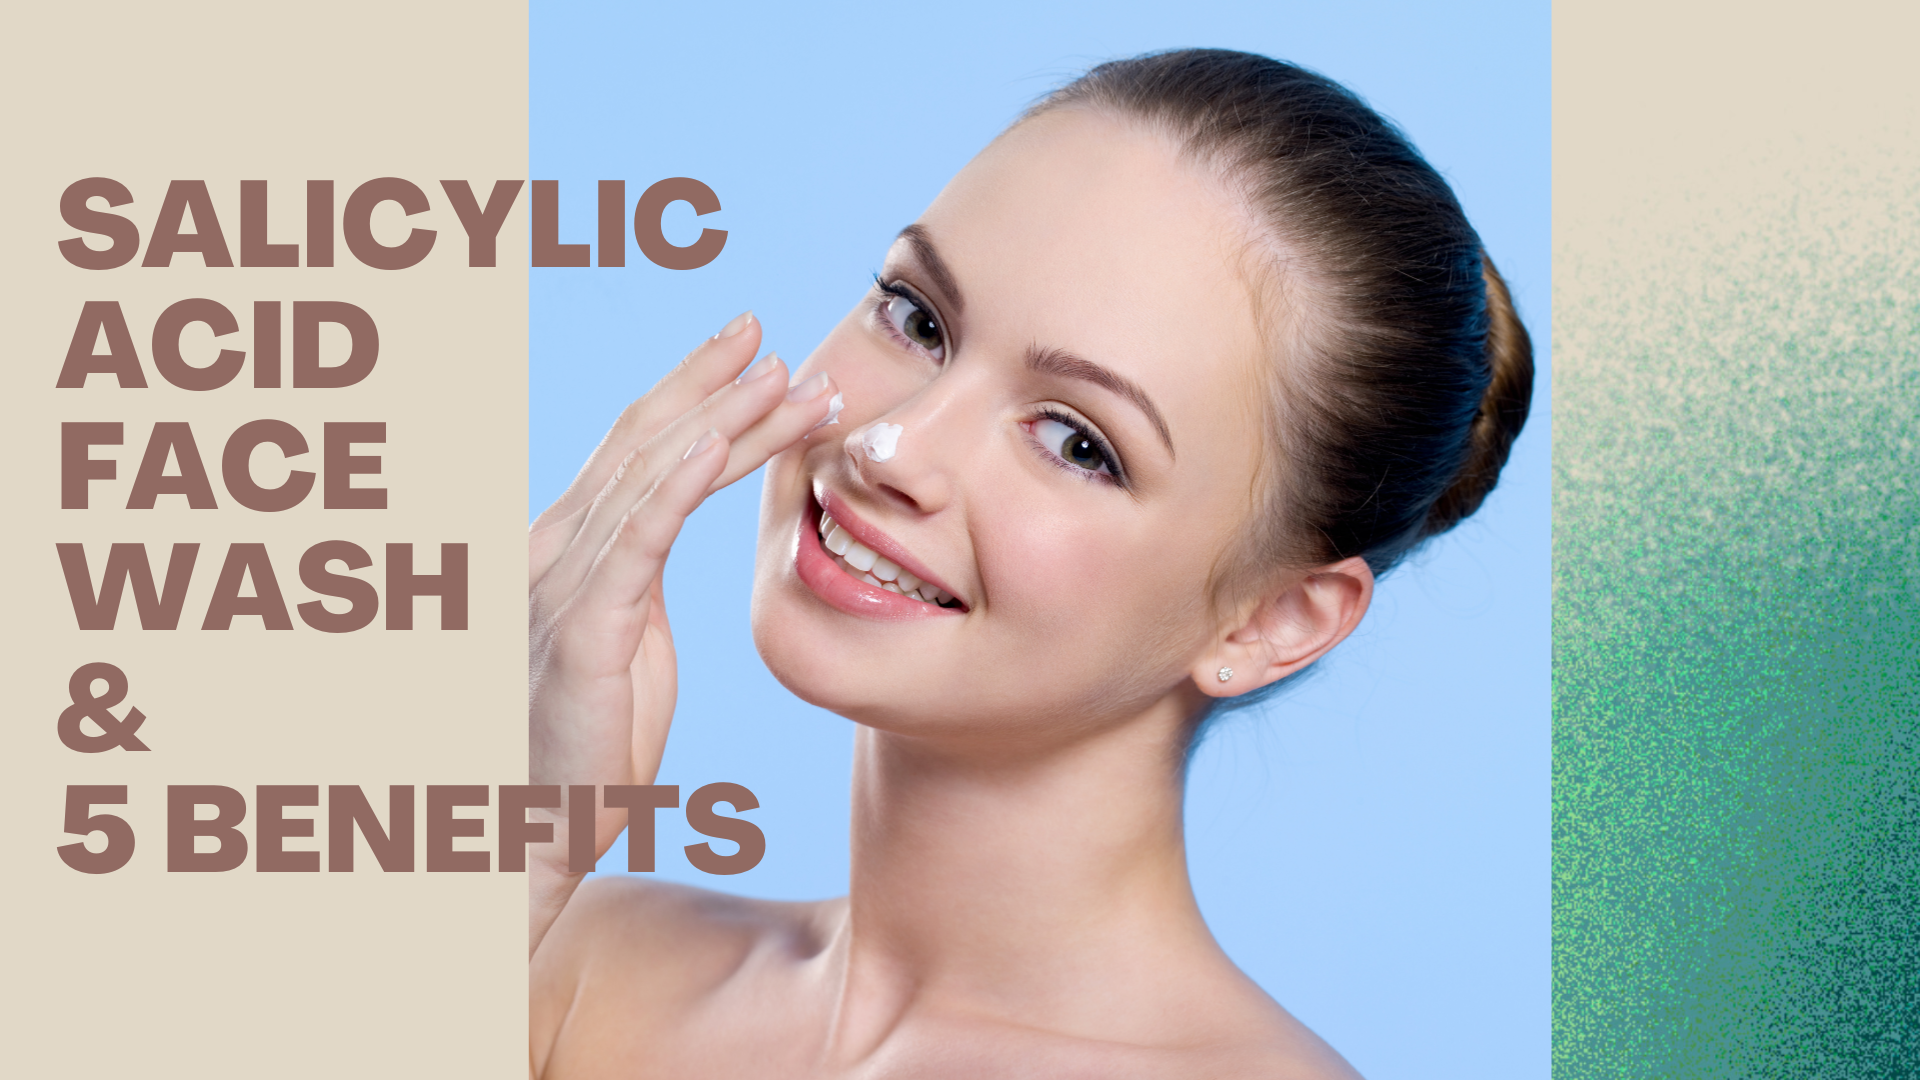 salicylic acid face wash & 5 benefits